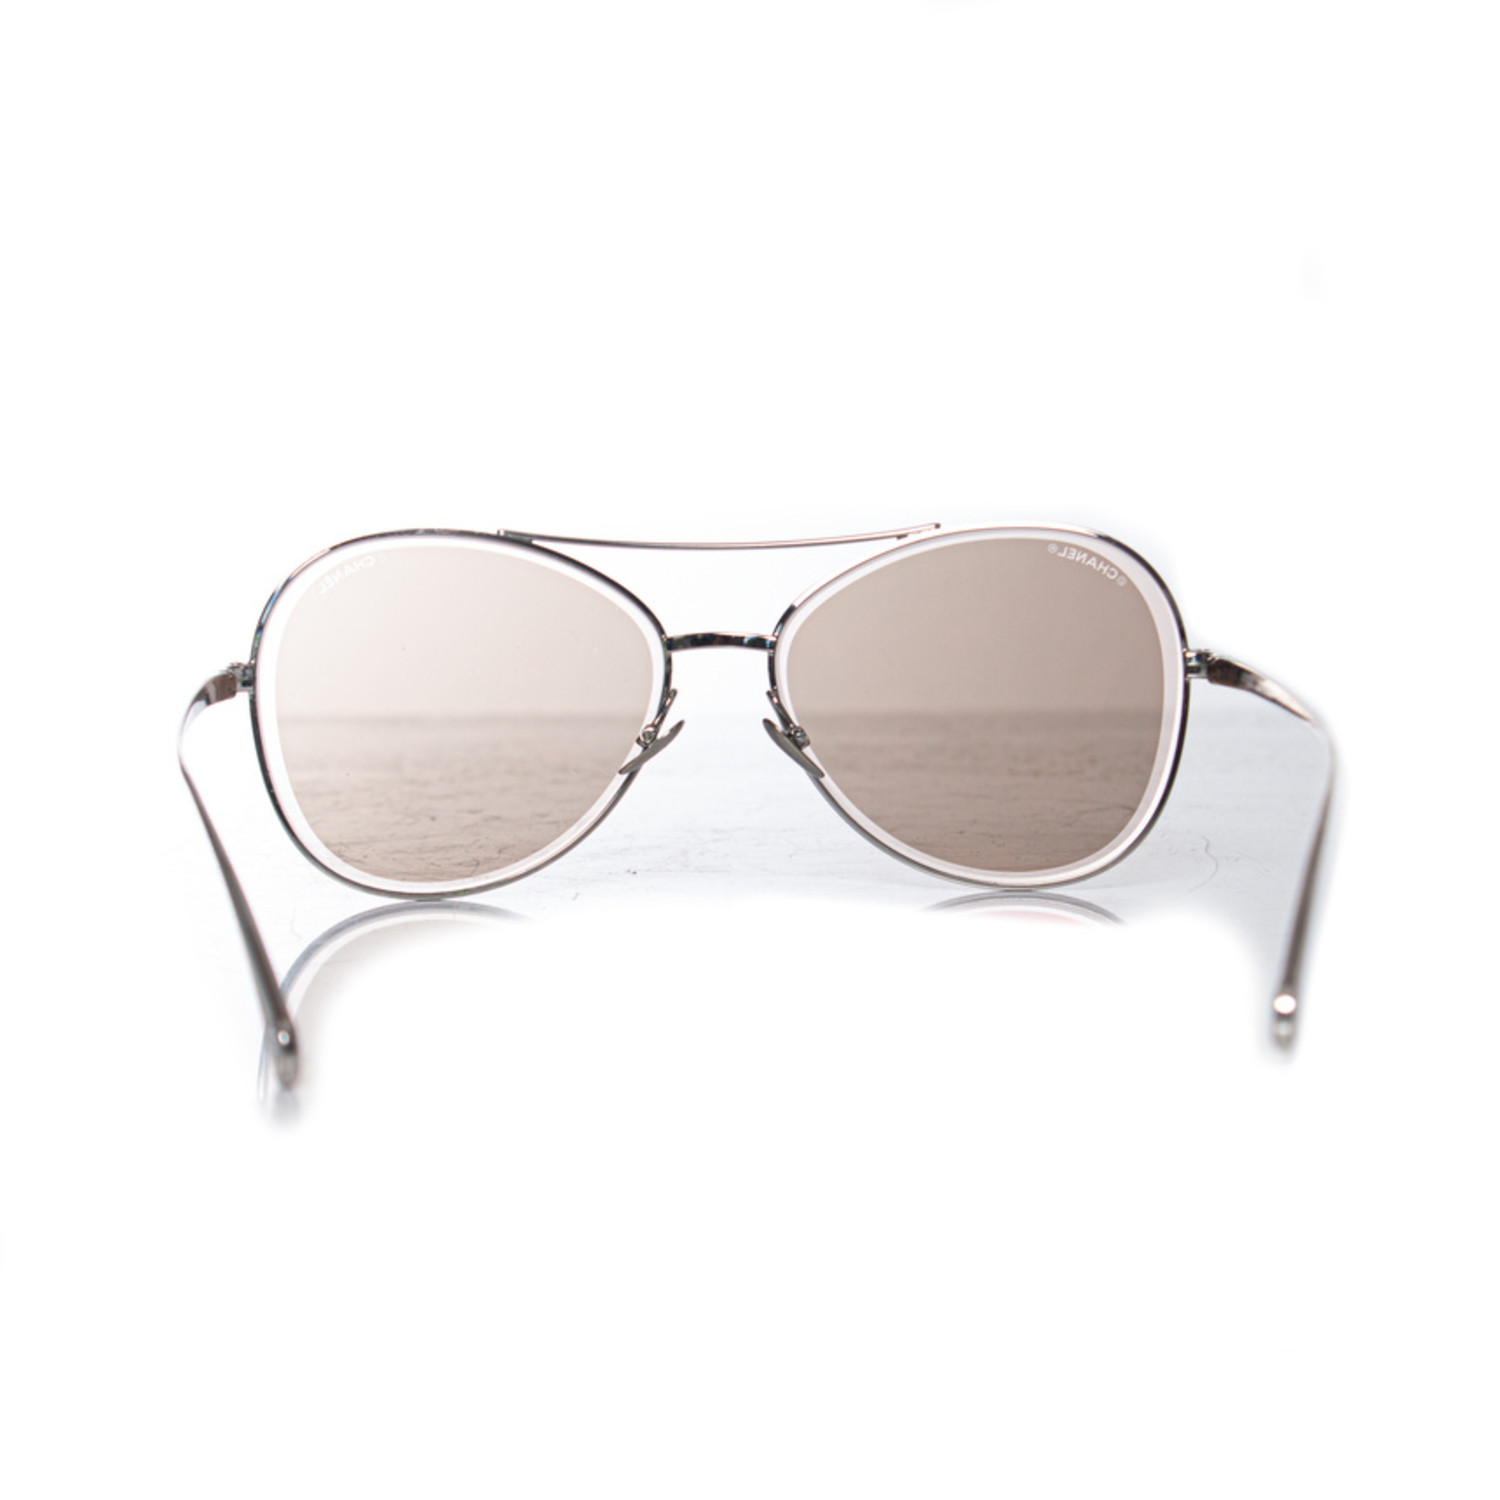 Chanel classic sunglasses - flyi